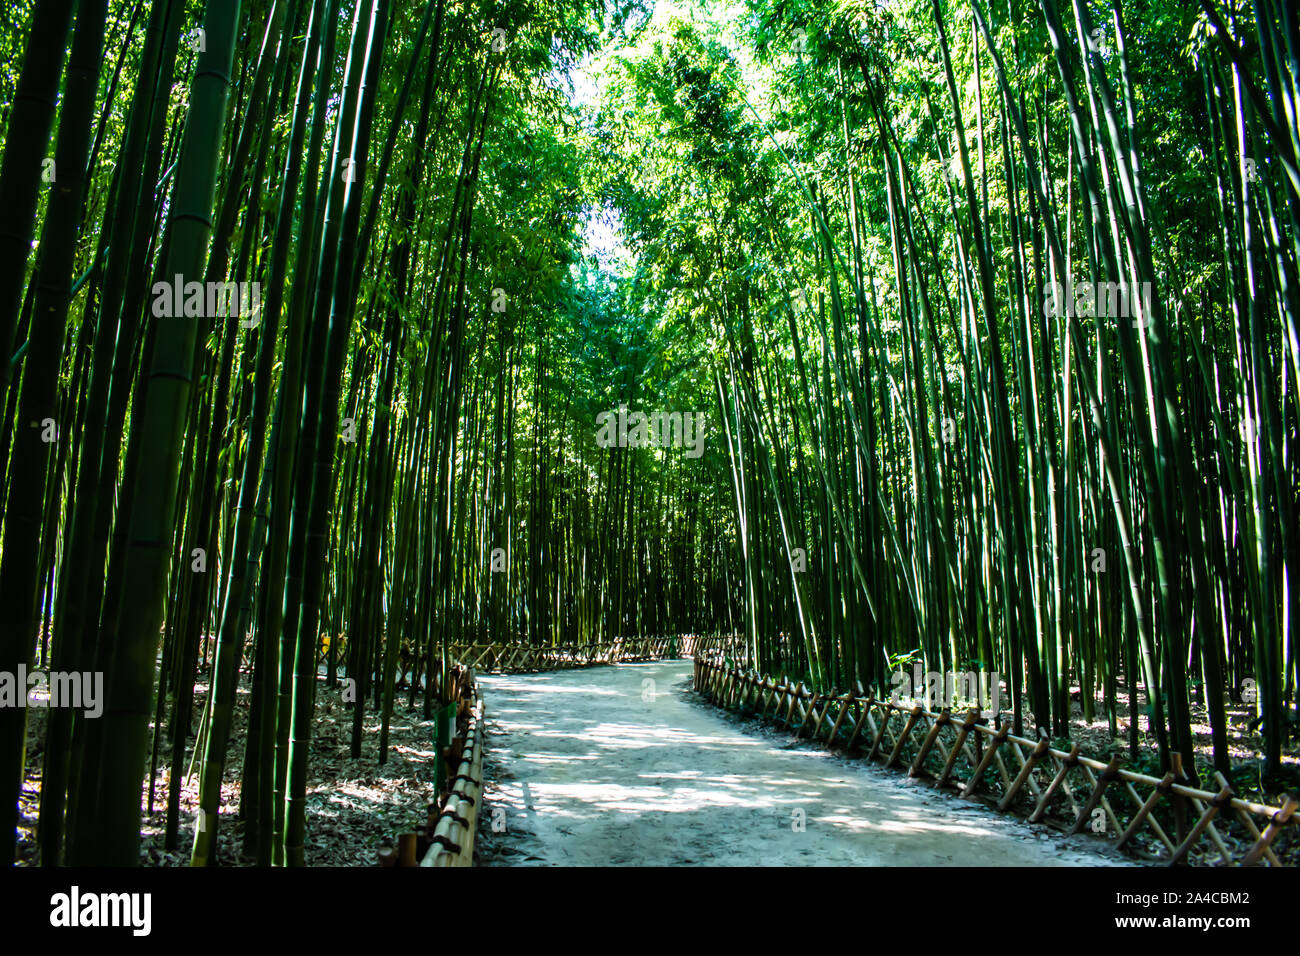 Serena splendide foreste di bambù. Fate una passeggiata attraverso questo tranquillo e magnifico spazio verde, come le torri di bambù sopra di voi. Foto Stock